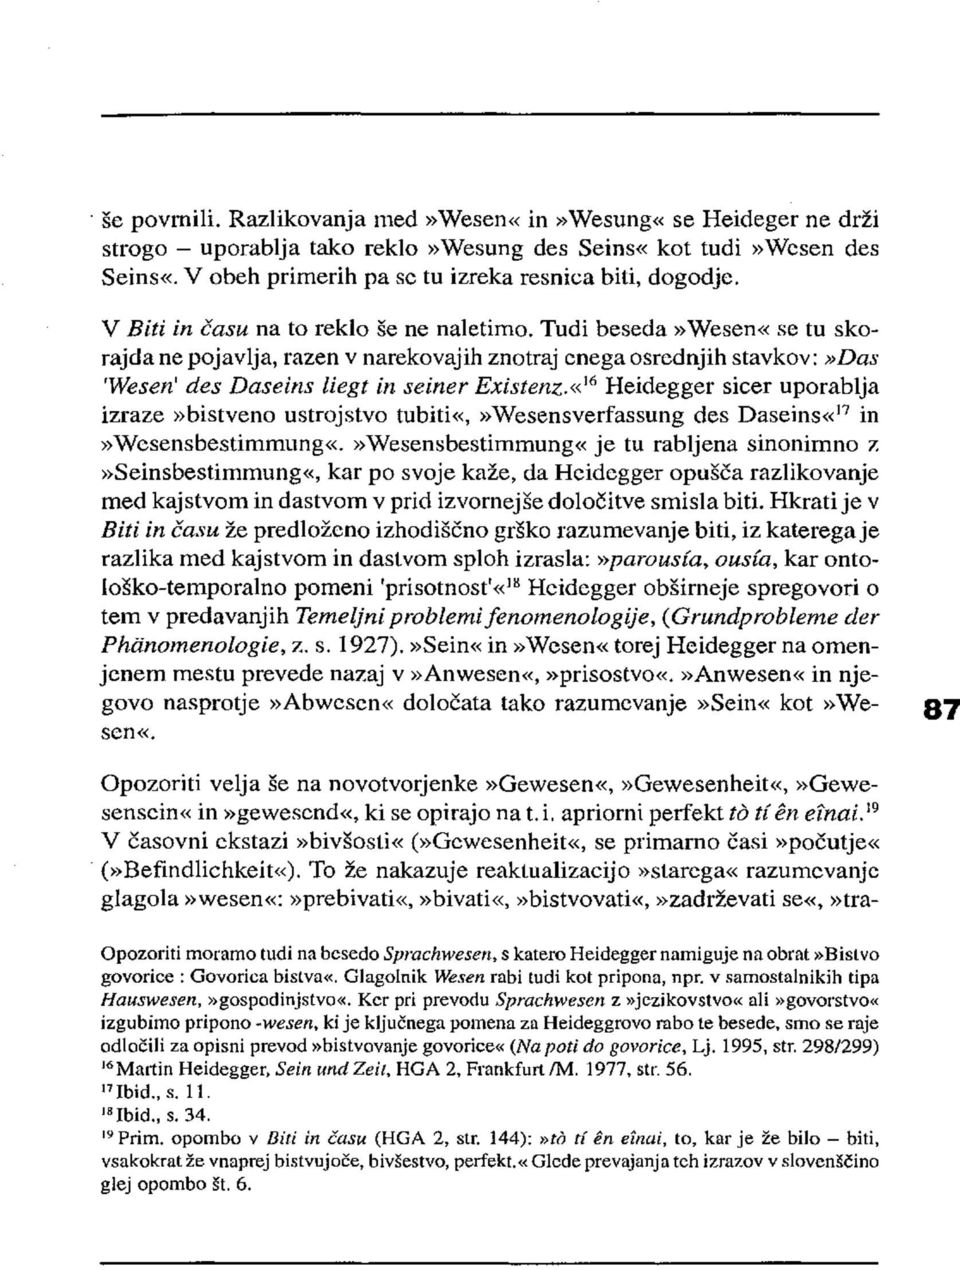 «16 Heidegger sicer uporablja izraze»bistveno ustrojstvo tubiti«,»wesensverfassung des Daseins«17 in»wesensbestimmung«.